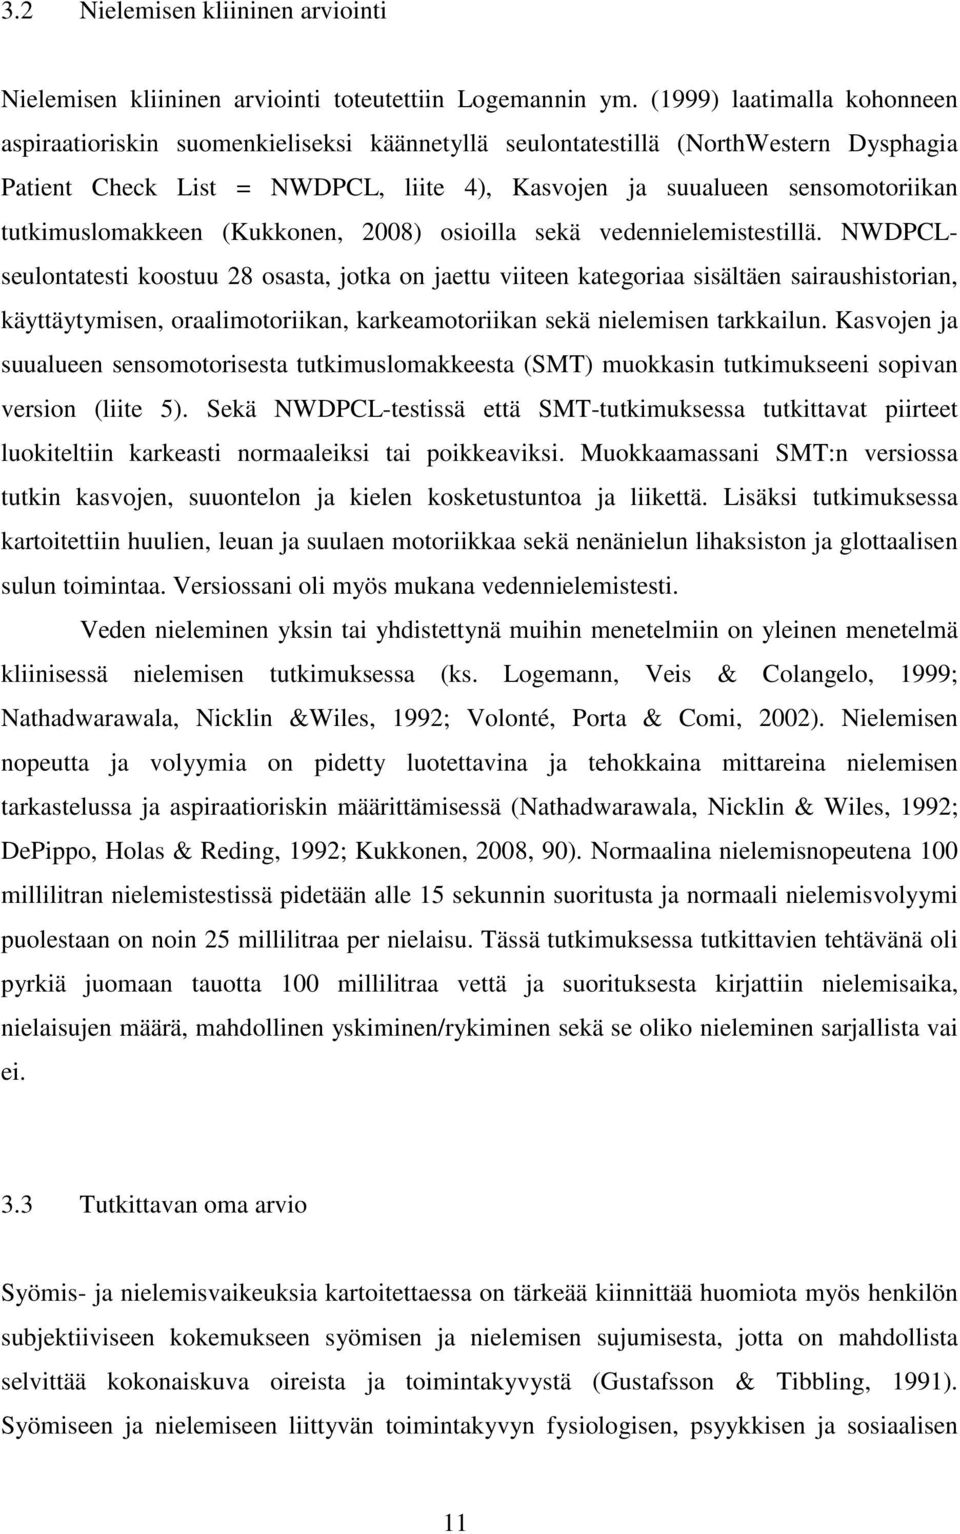 tutkimuslomakkeen (Kukkonen, 2008) osioilla sekä vedennielemistestillä.